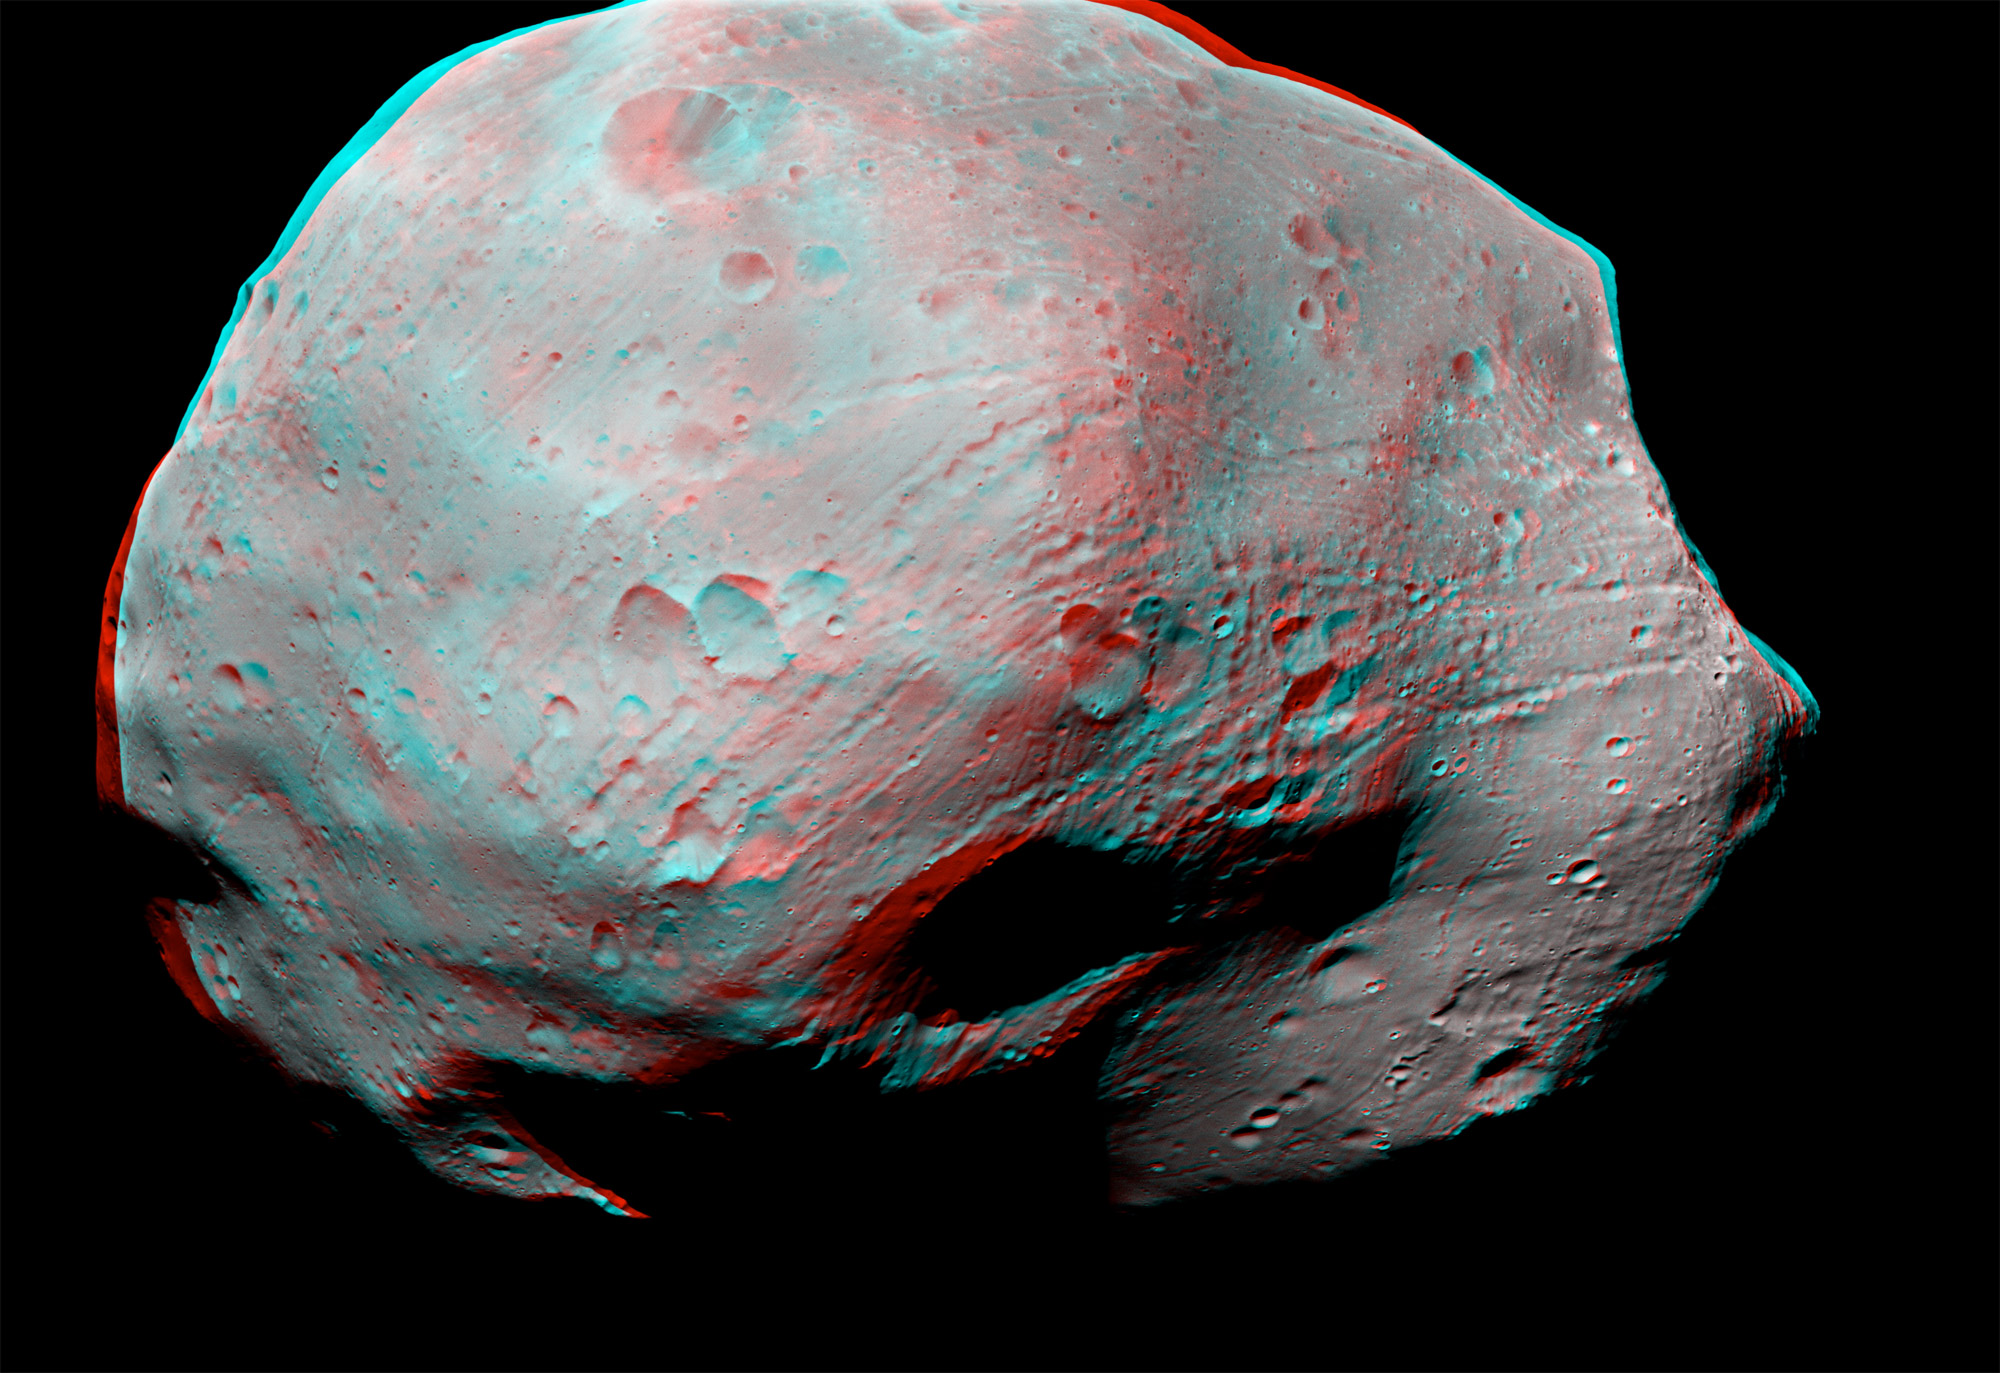 En raison de sa proximité à Mars et de son histoire et sa composition, l'exploration robotique et humaine de Phobos aura bien lieu. Mieux encore, il pourrait devenir un poste avancé de l'exploration humaine de Mars. Cette vue en 3D (visible avec des lunettes anaglyphes) a été acquise par la sonde européenne Mars Express depuis une distance d'environ 10 km. © Esa /DLR/FU Berlin (G. Neukum)